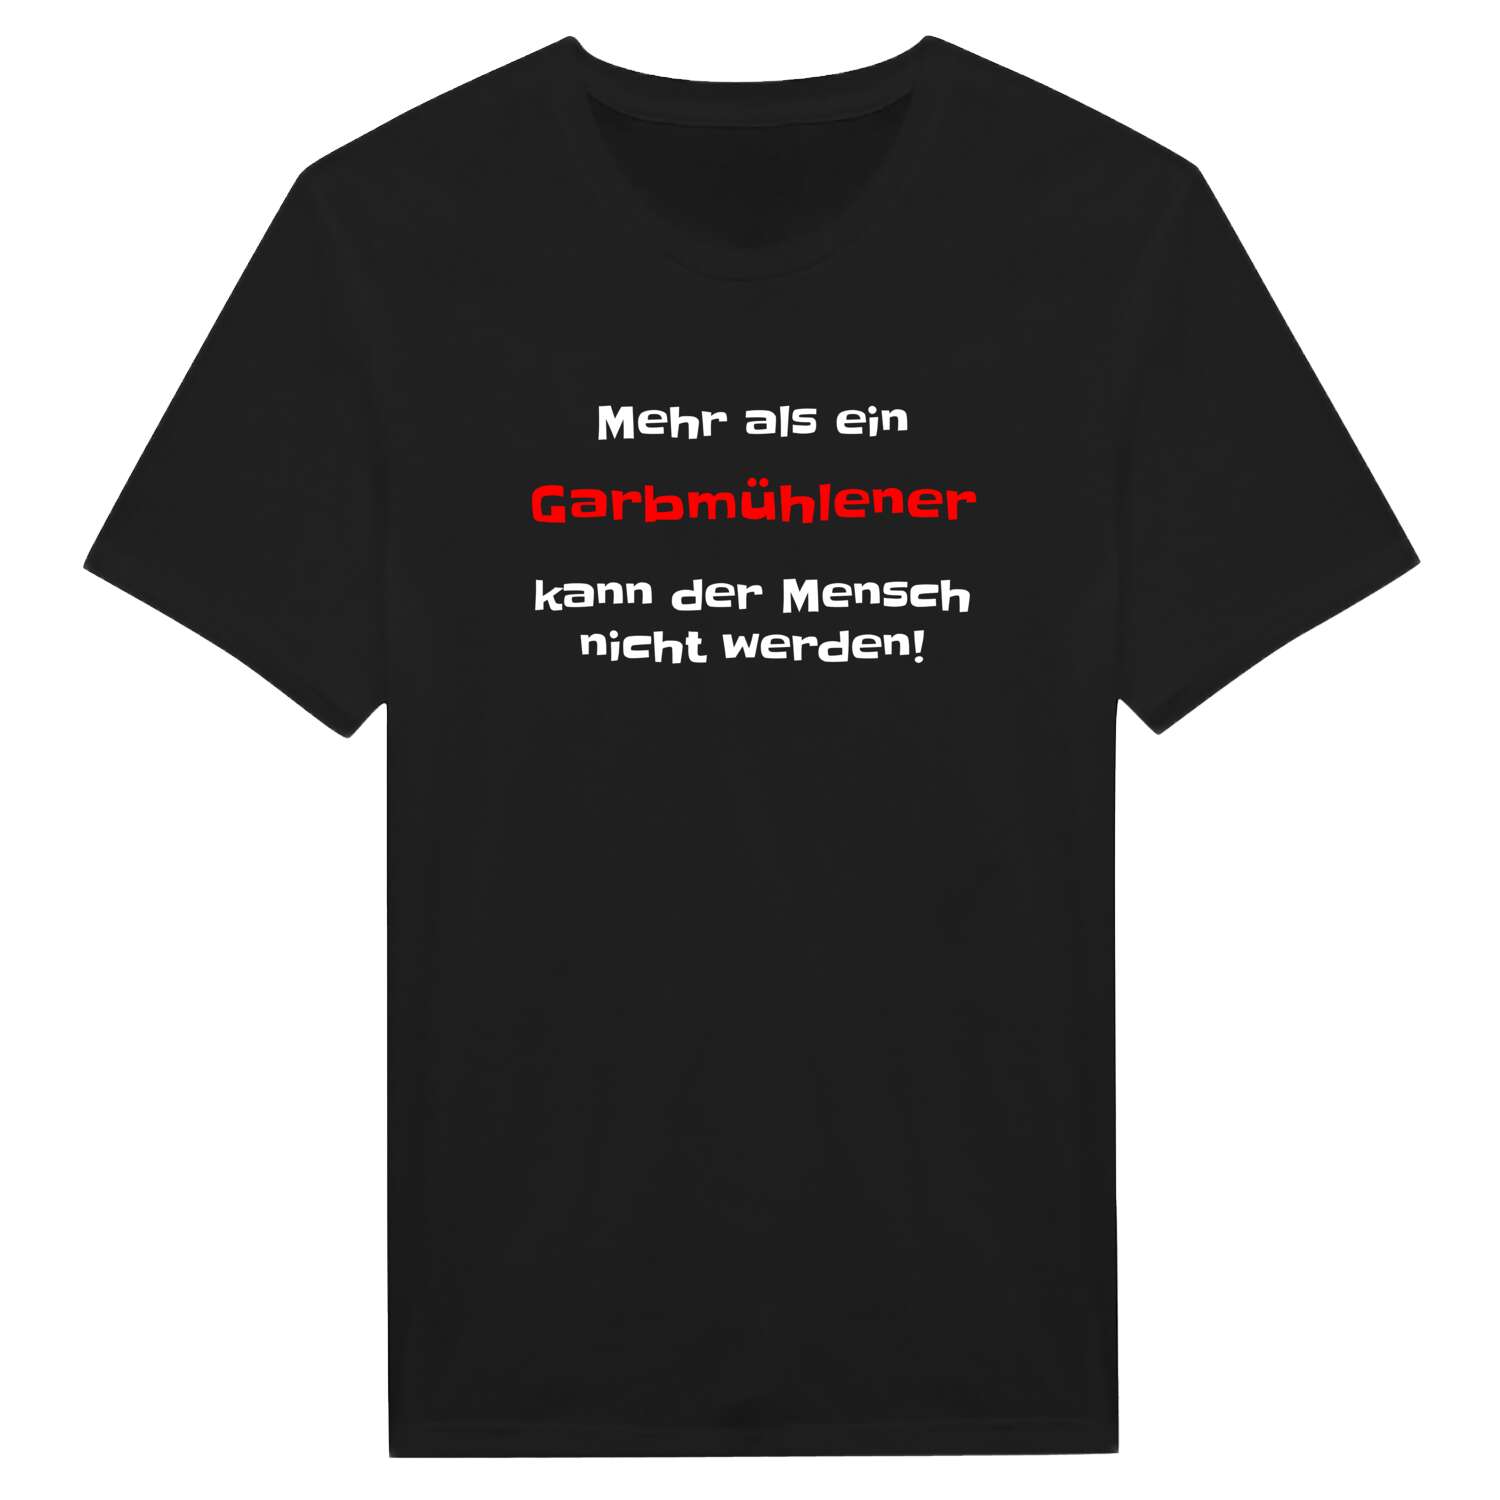 Garbmühle T-Shirt »Mehr als ein«